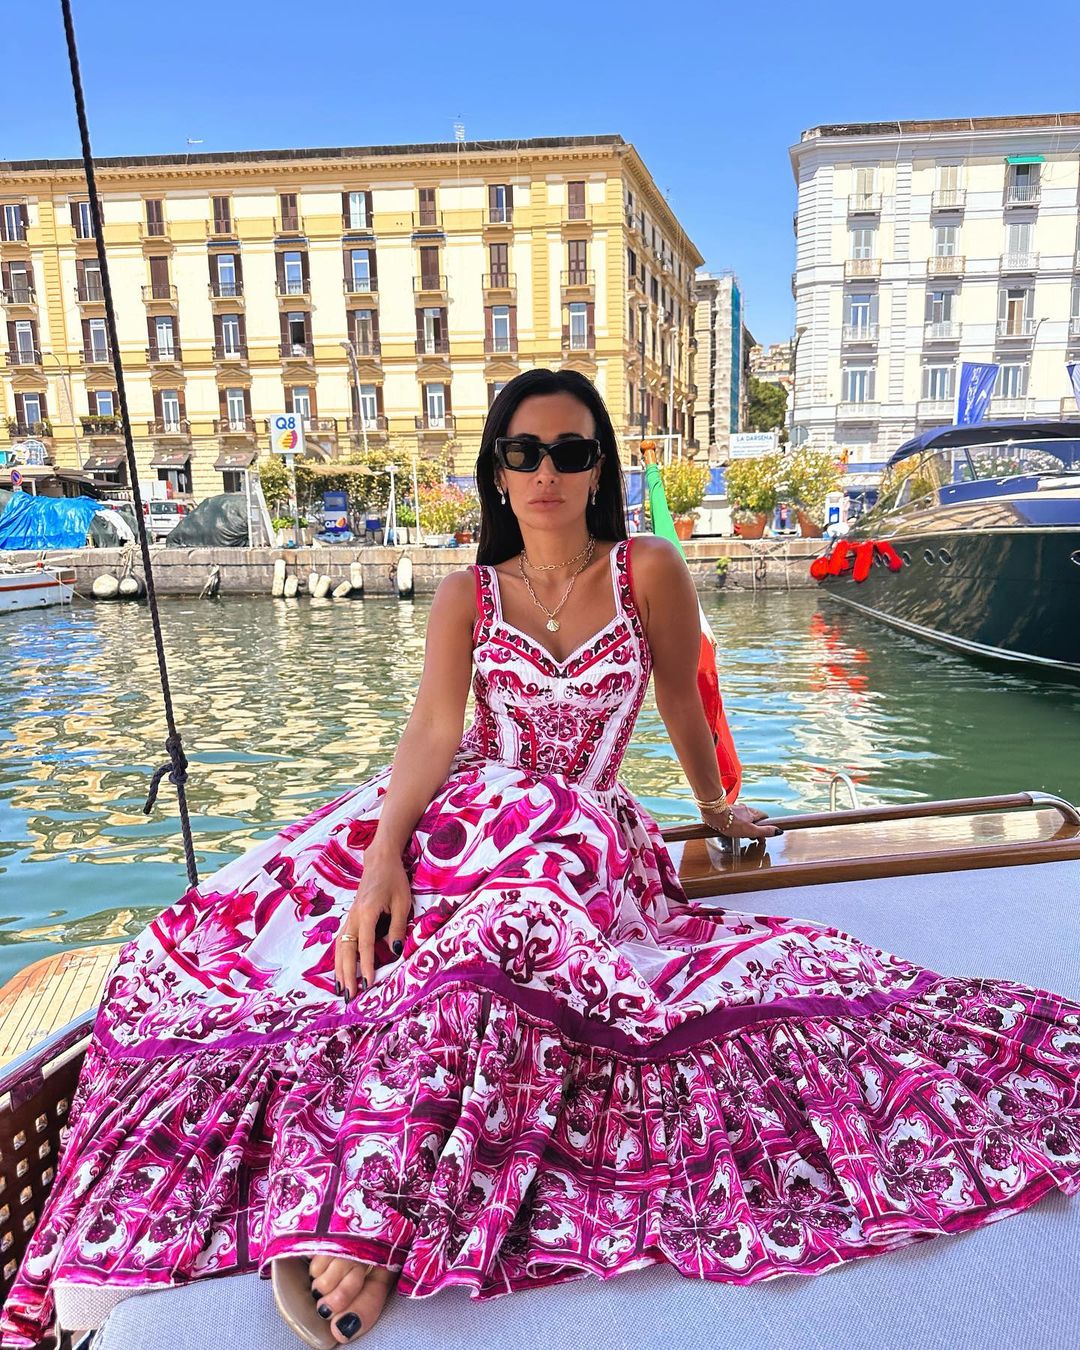 Vestido Capri